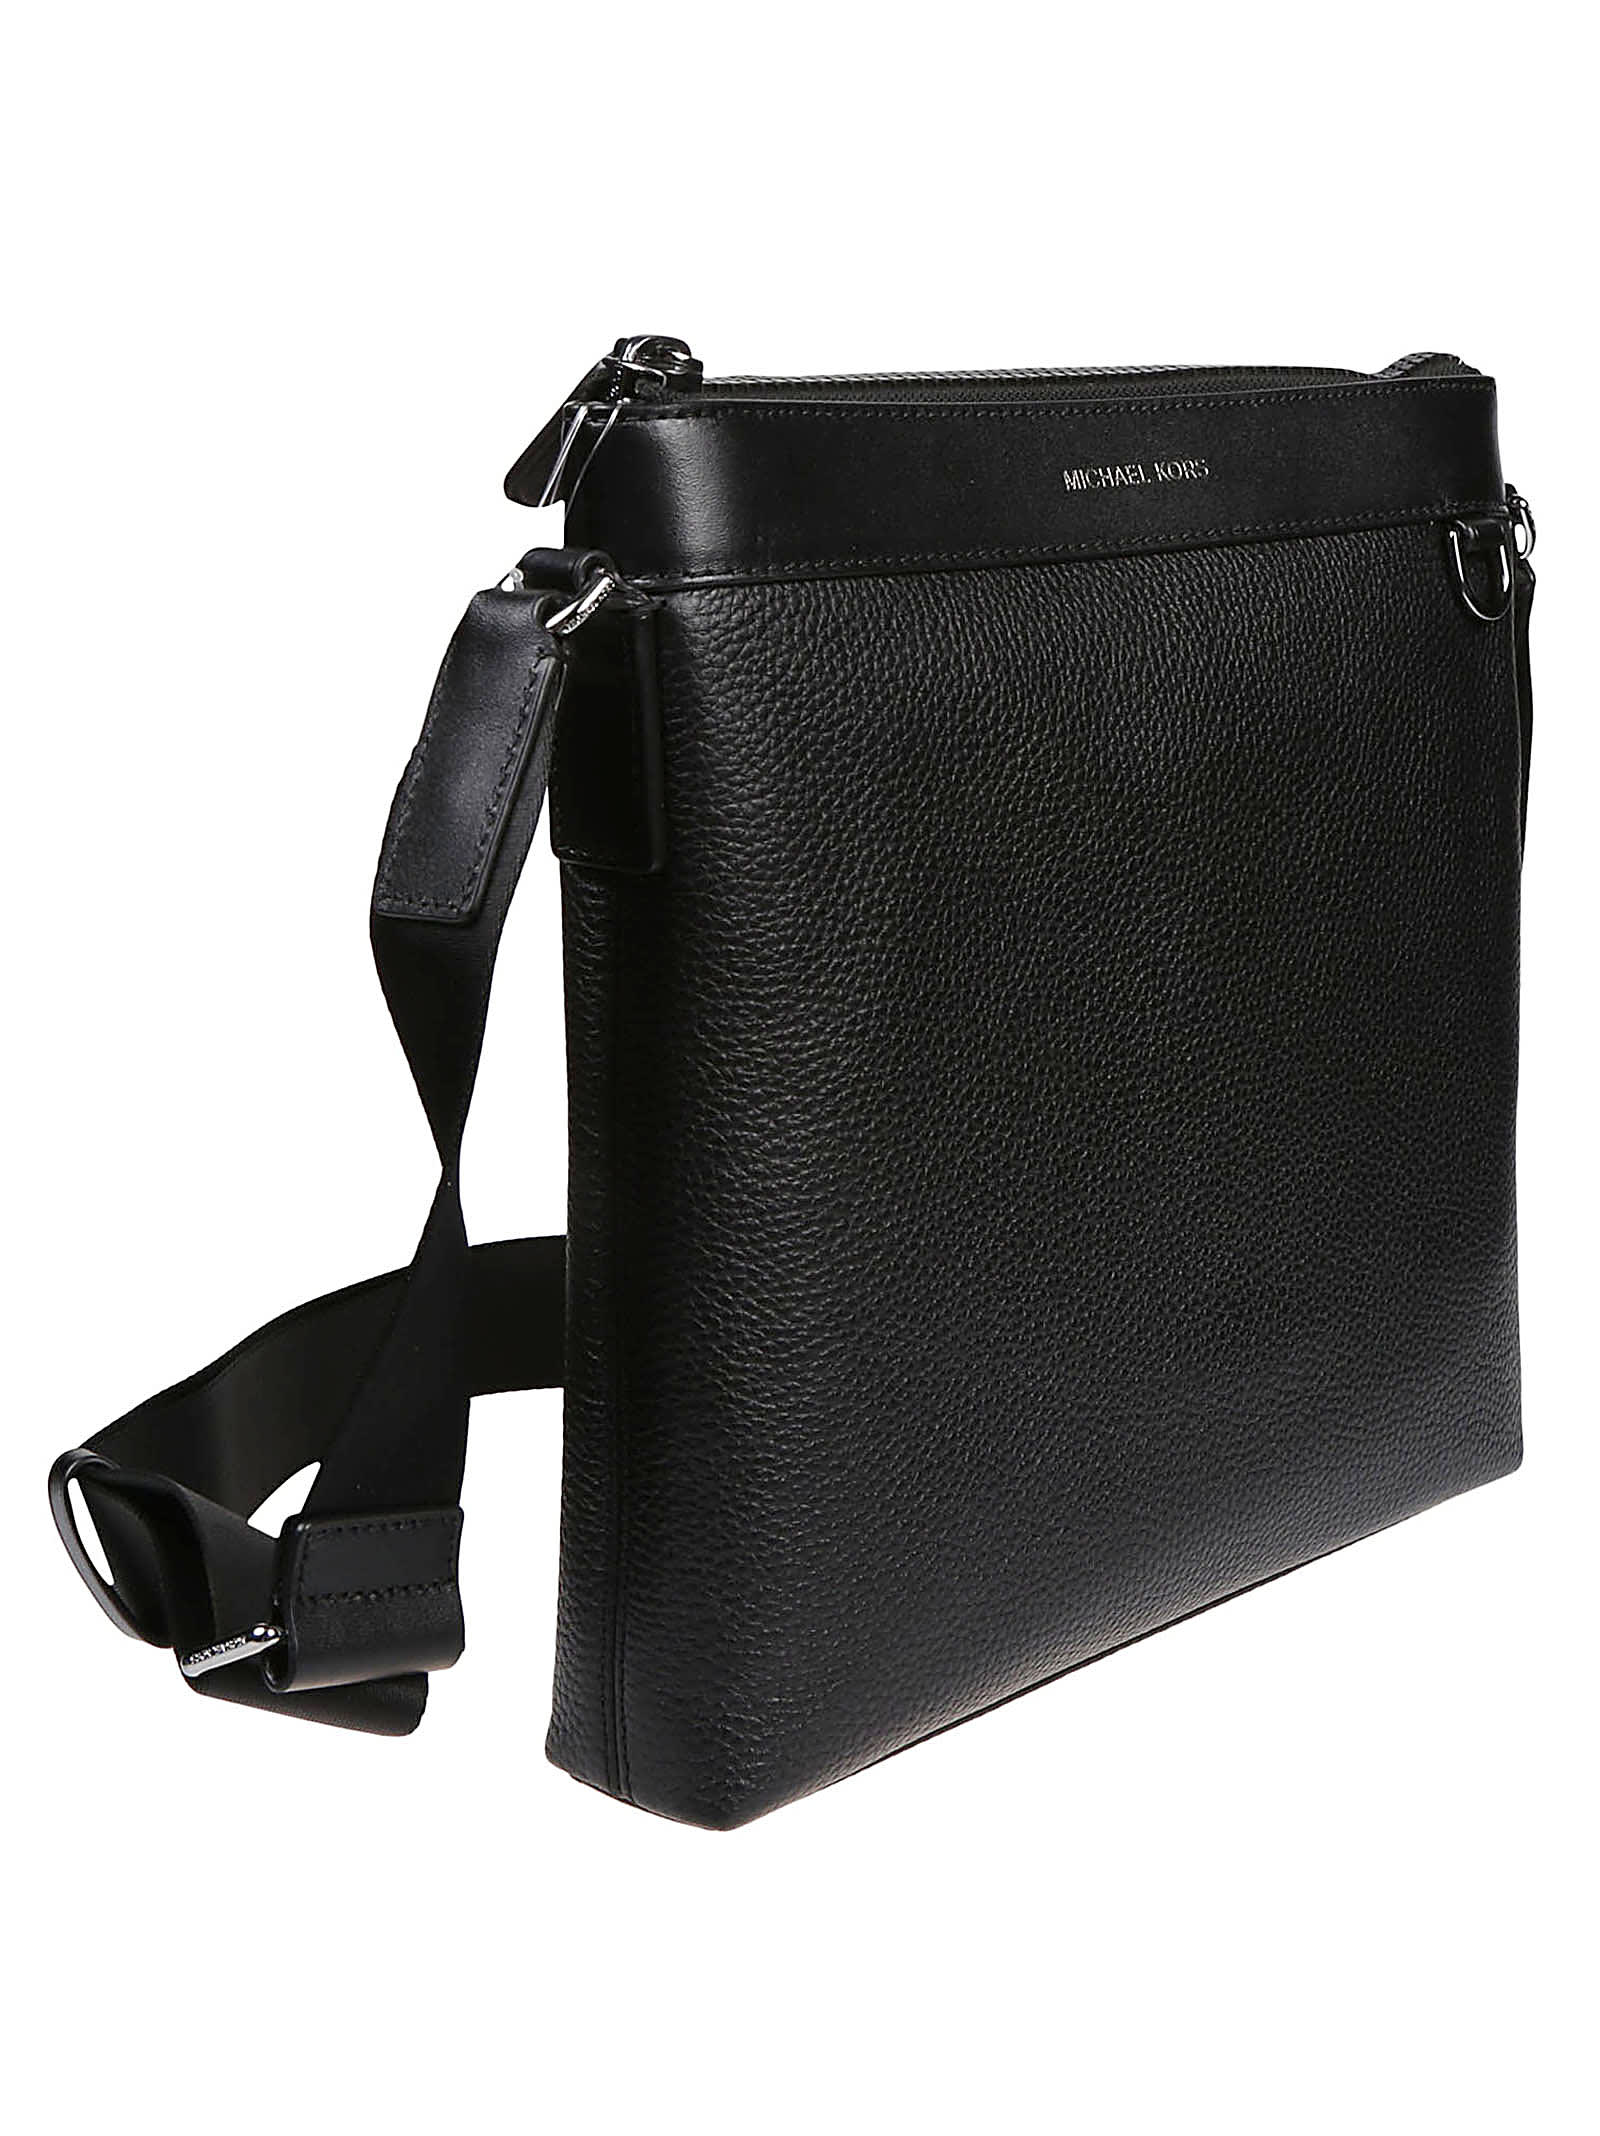 Shop Michael Kors Greyson Messenger Bag In Black